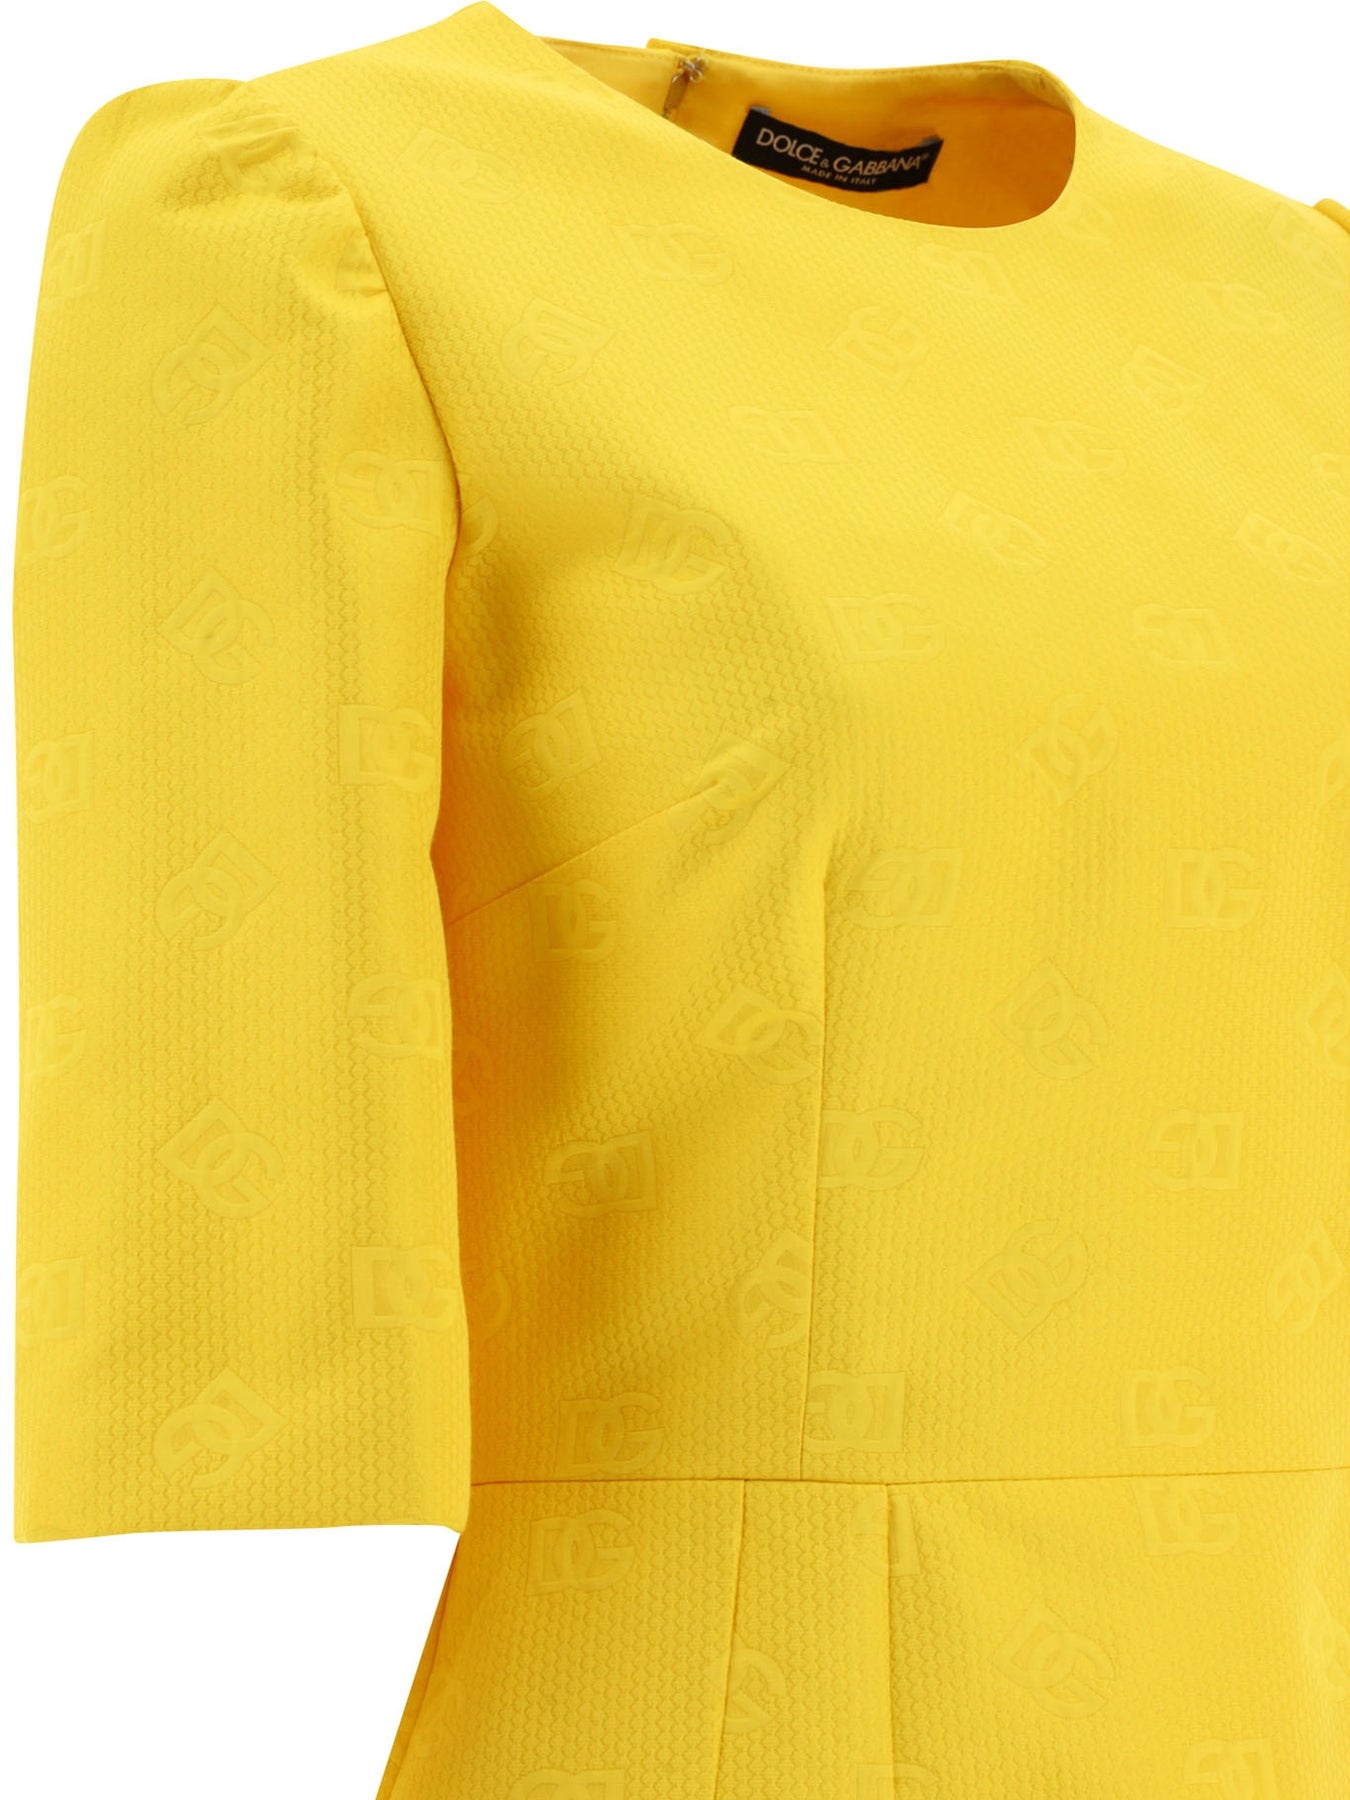 Dg Dresses Yellow - 4